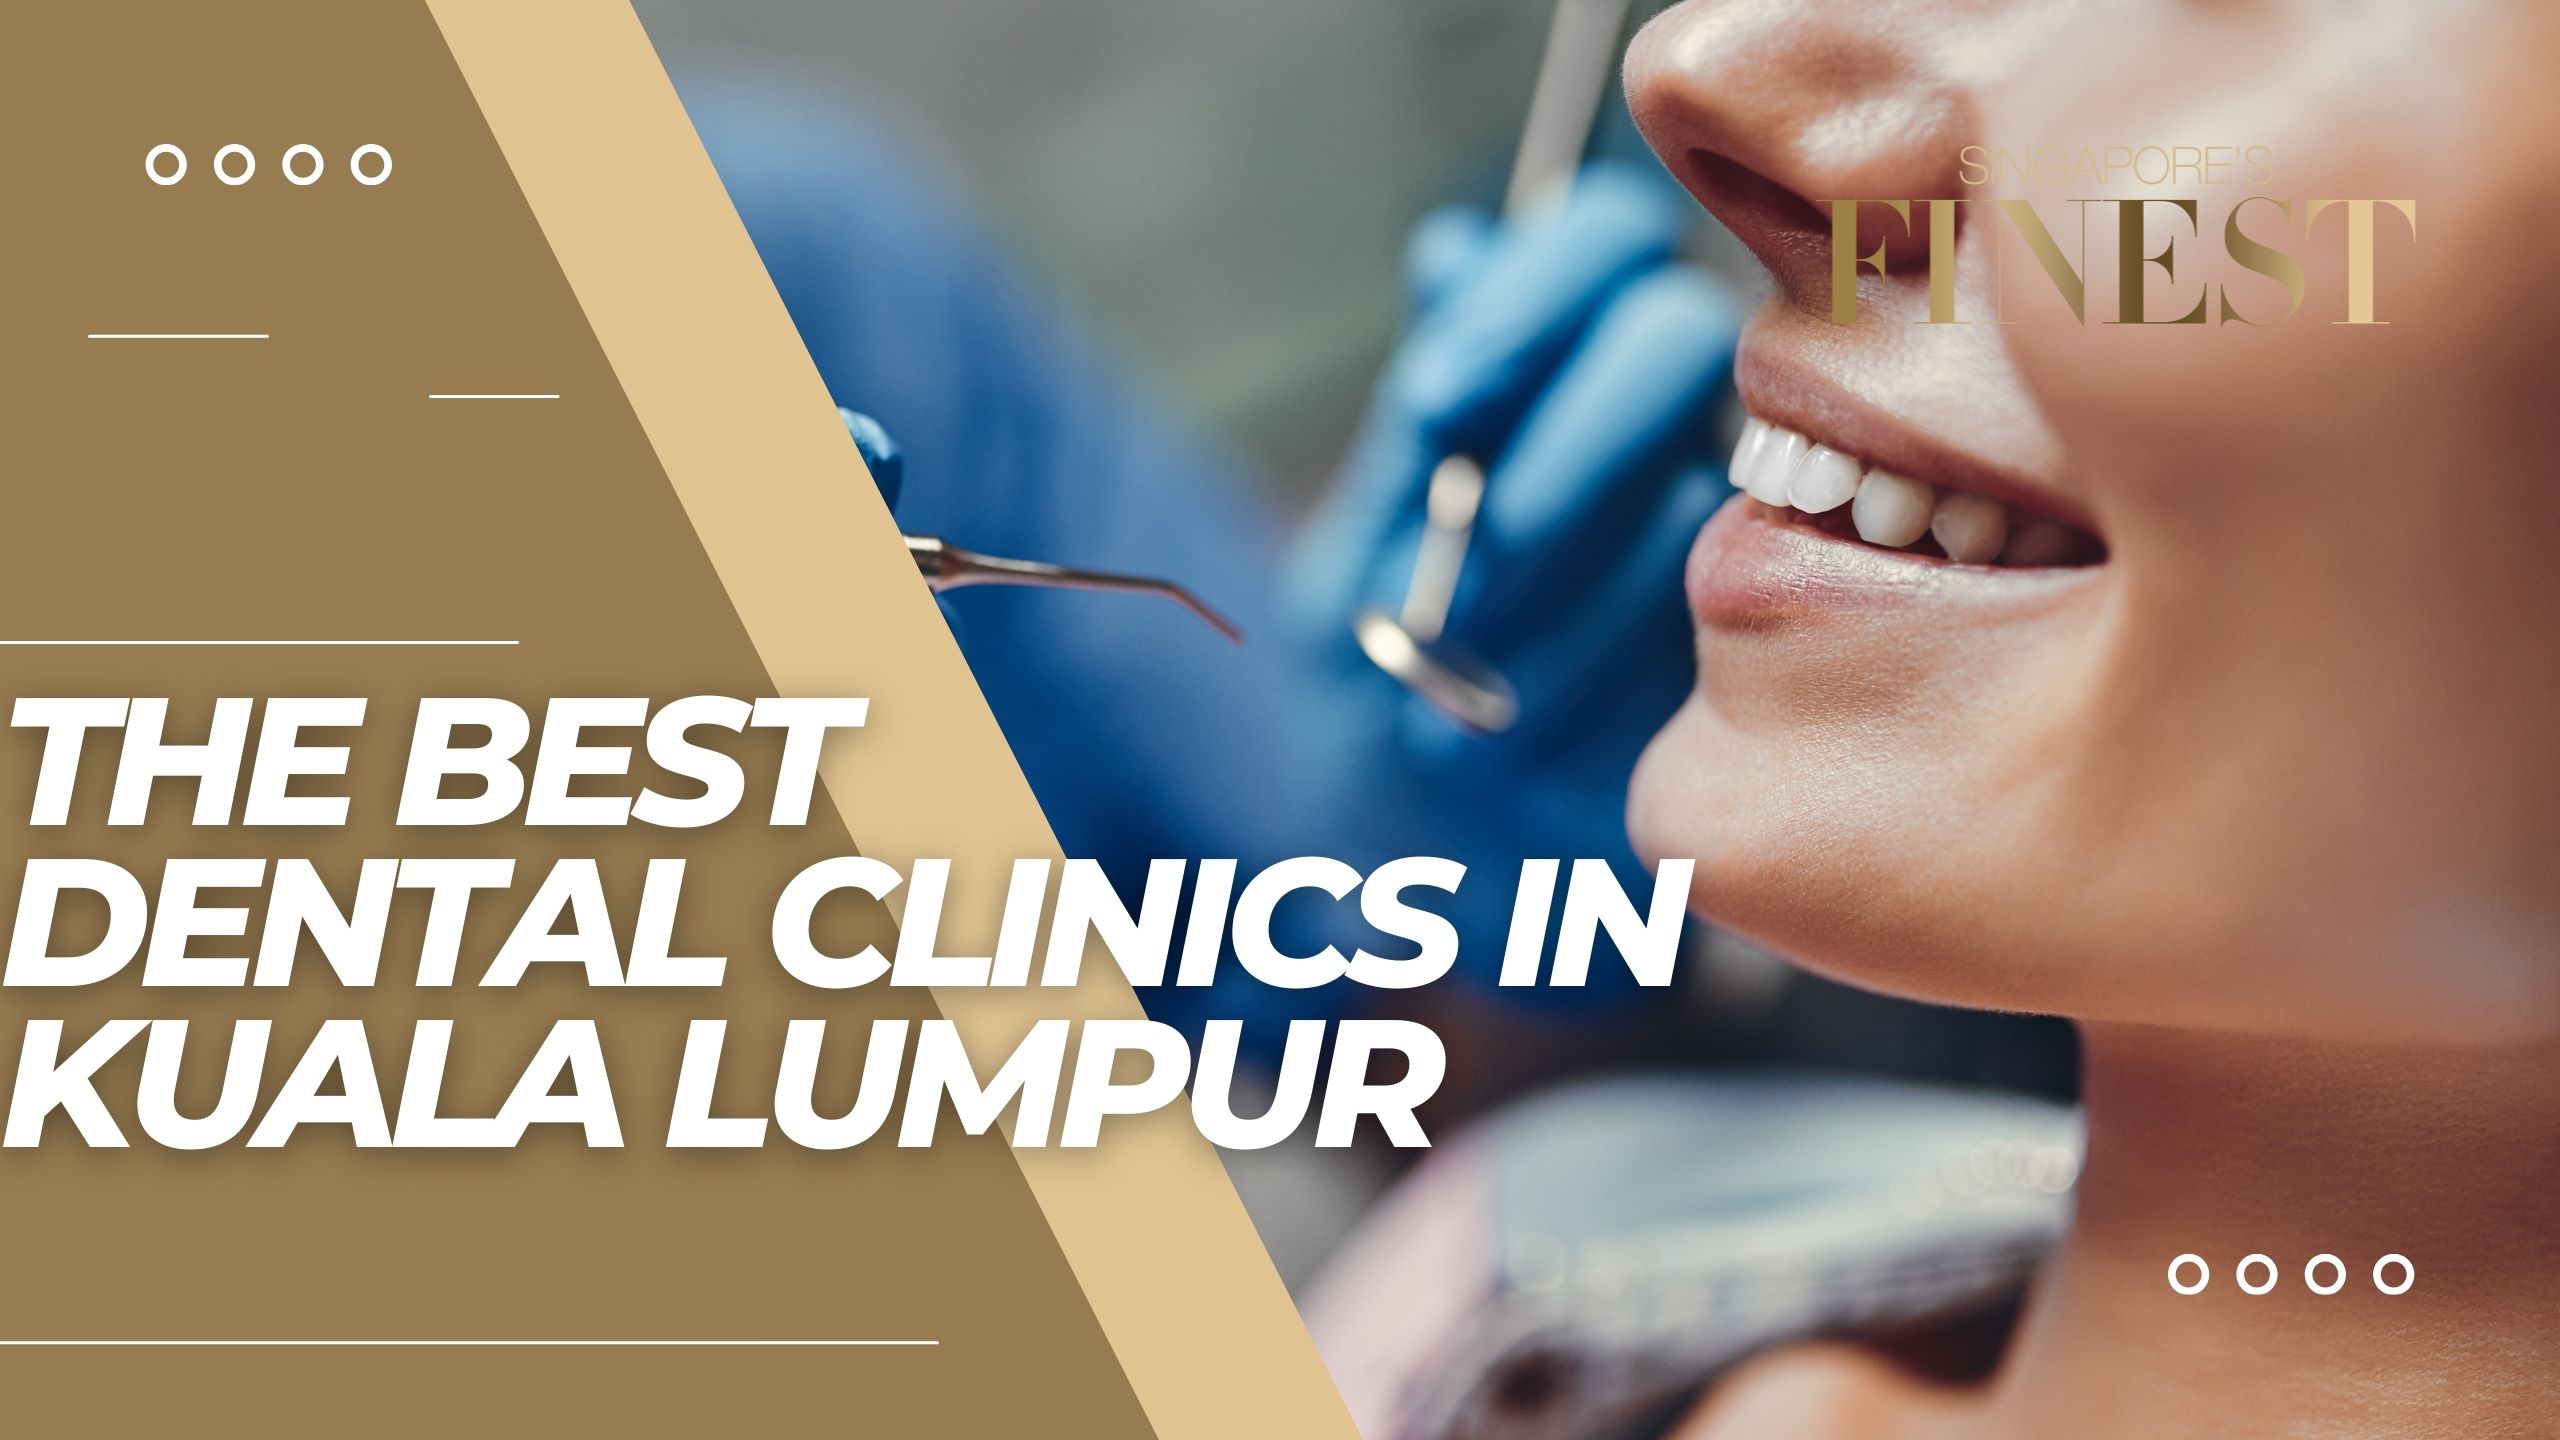 The Finest Dental Clinics in Kuala Lumpur